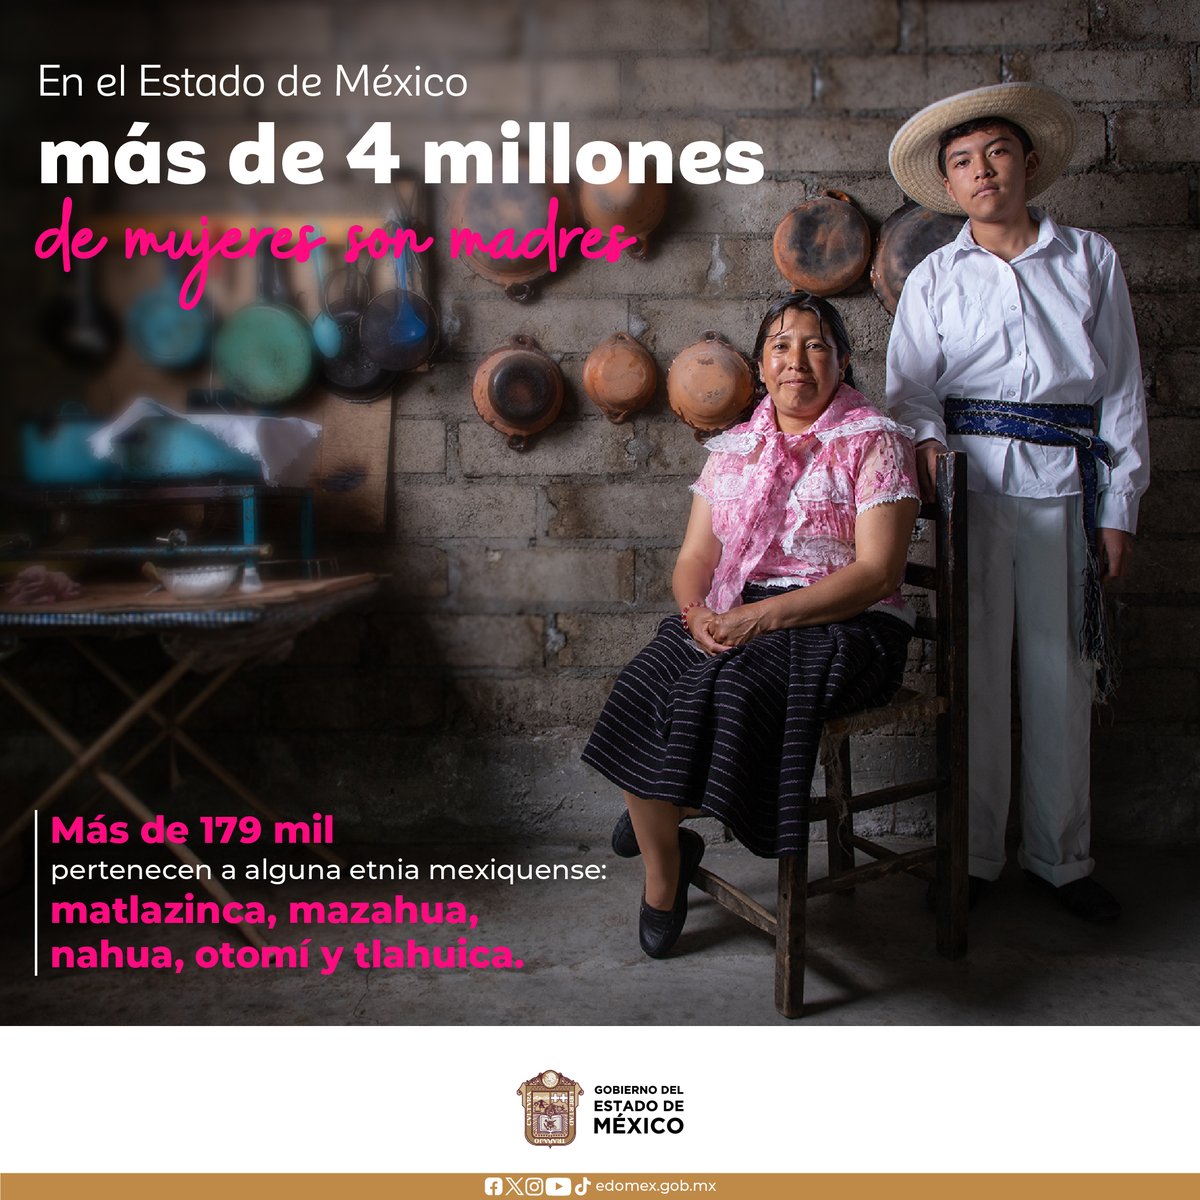 ¿Sabías qué? En el Estado de México más de 4 millones de mujeres son madres, de las cuales, más de 179 mil pertenecen a alguna etnia mexiquense. ¡Feliz Día de las Madres!